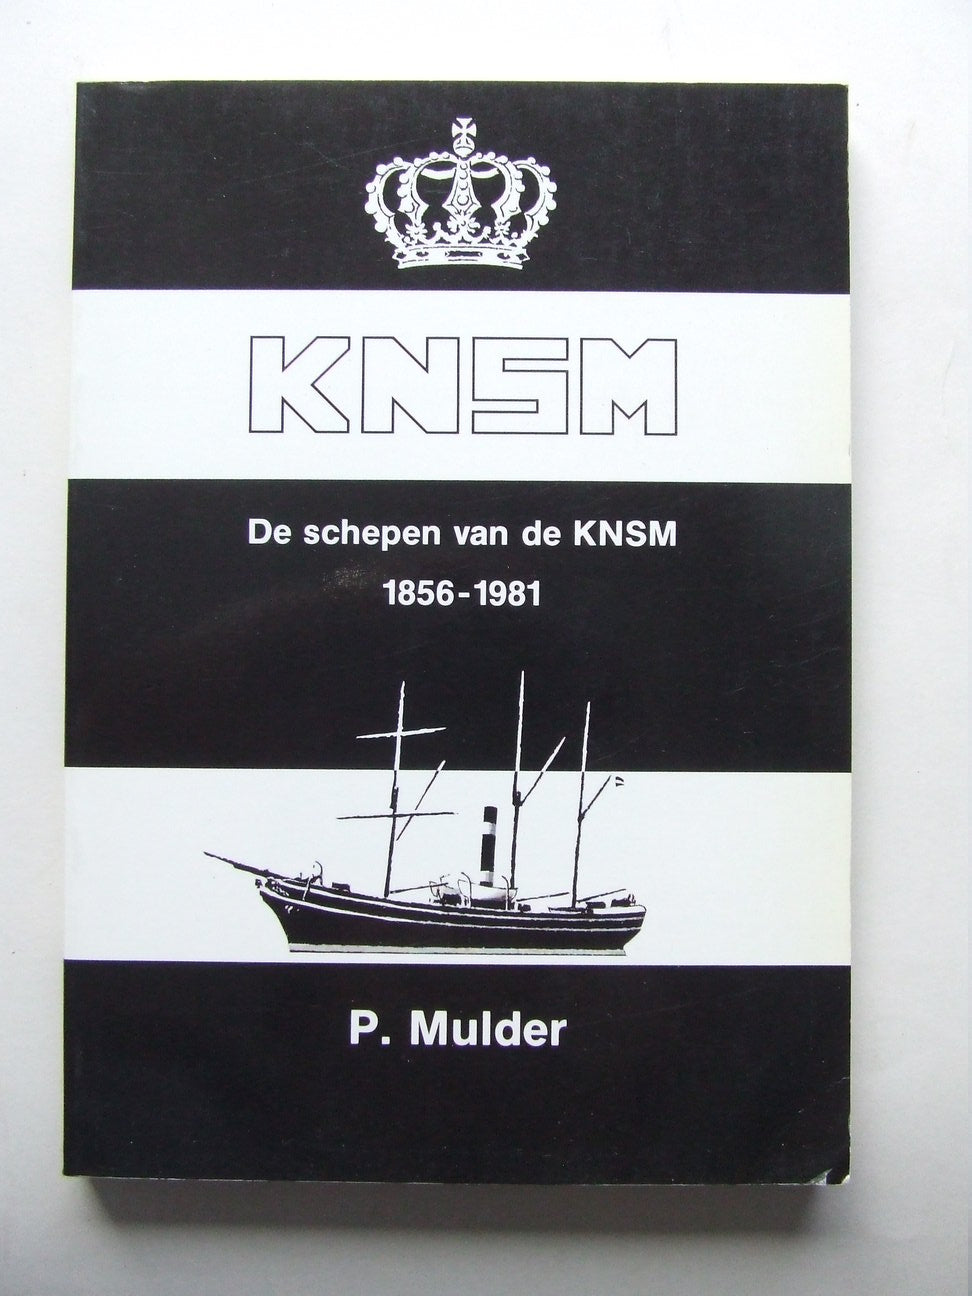 De Schepen van de KNSM 1856-1981